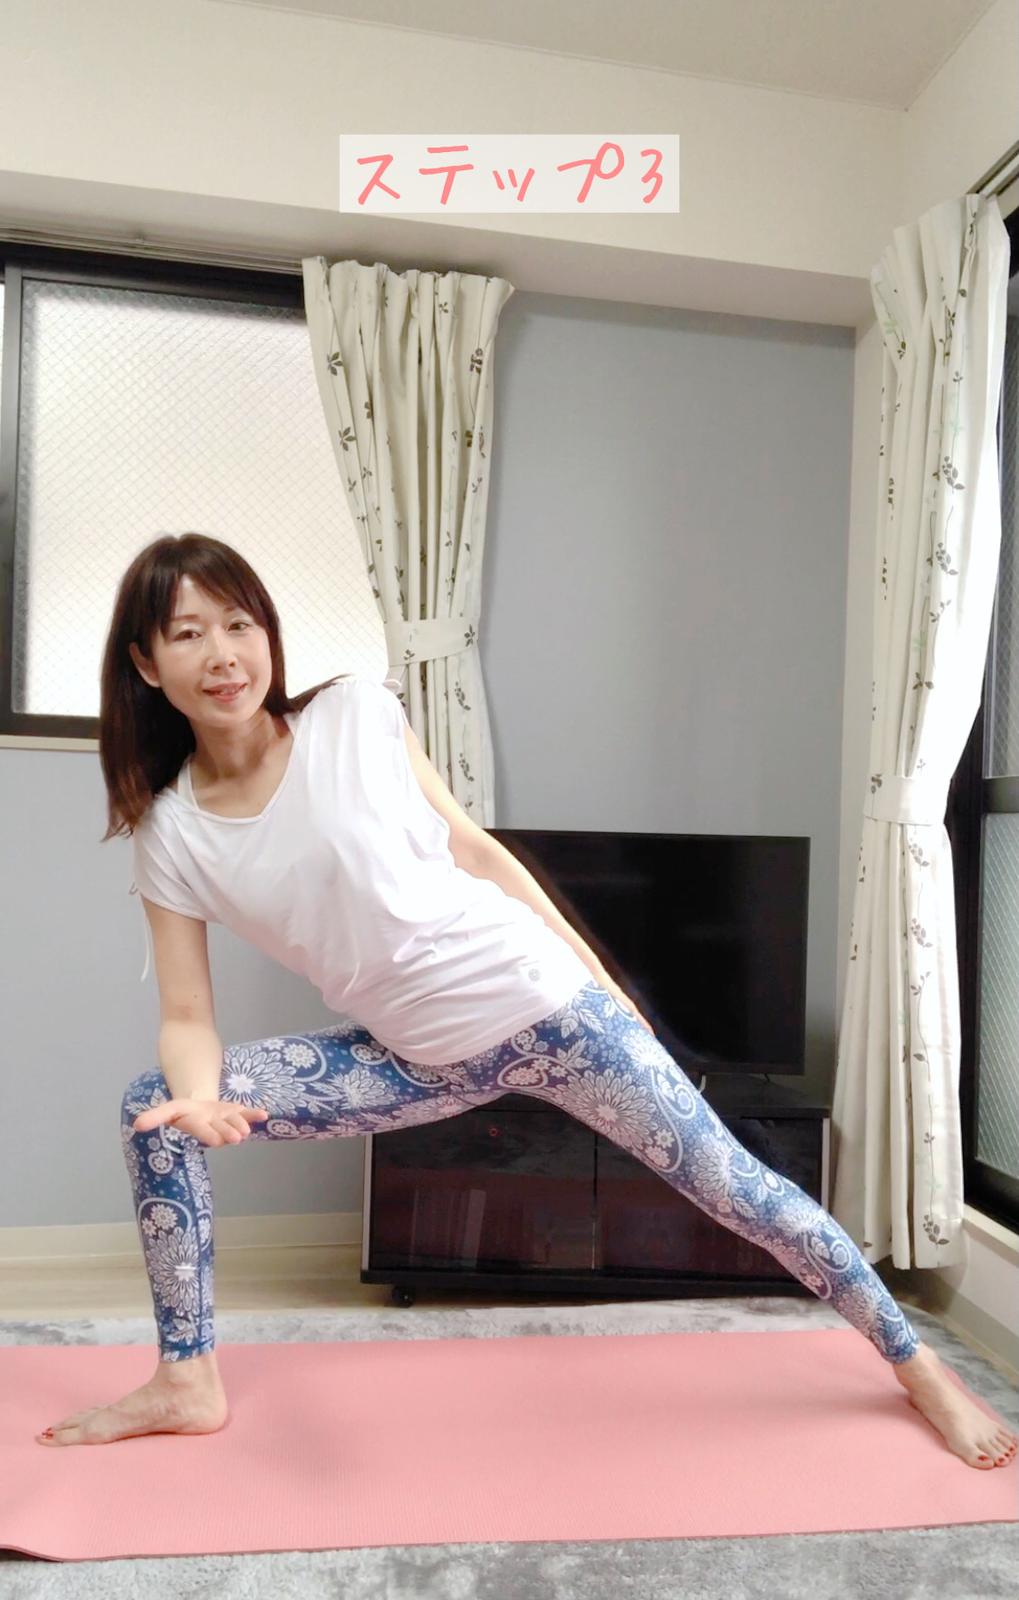 体幹強化 下半身強化 基礎代謝を上げ痩せやすい身体になるヨガ トレーニング Kotomi Yogaが投稿したフォトブック Sharee